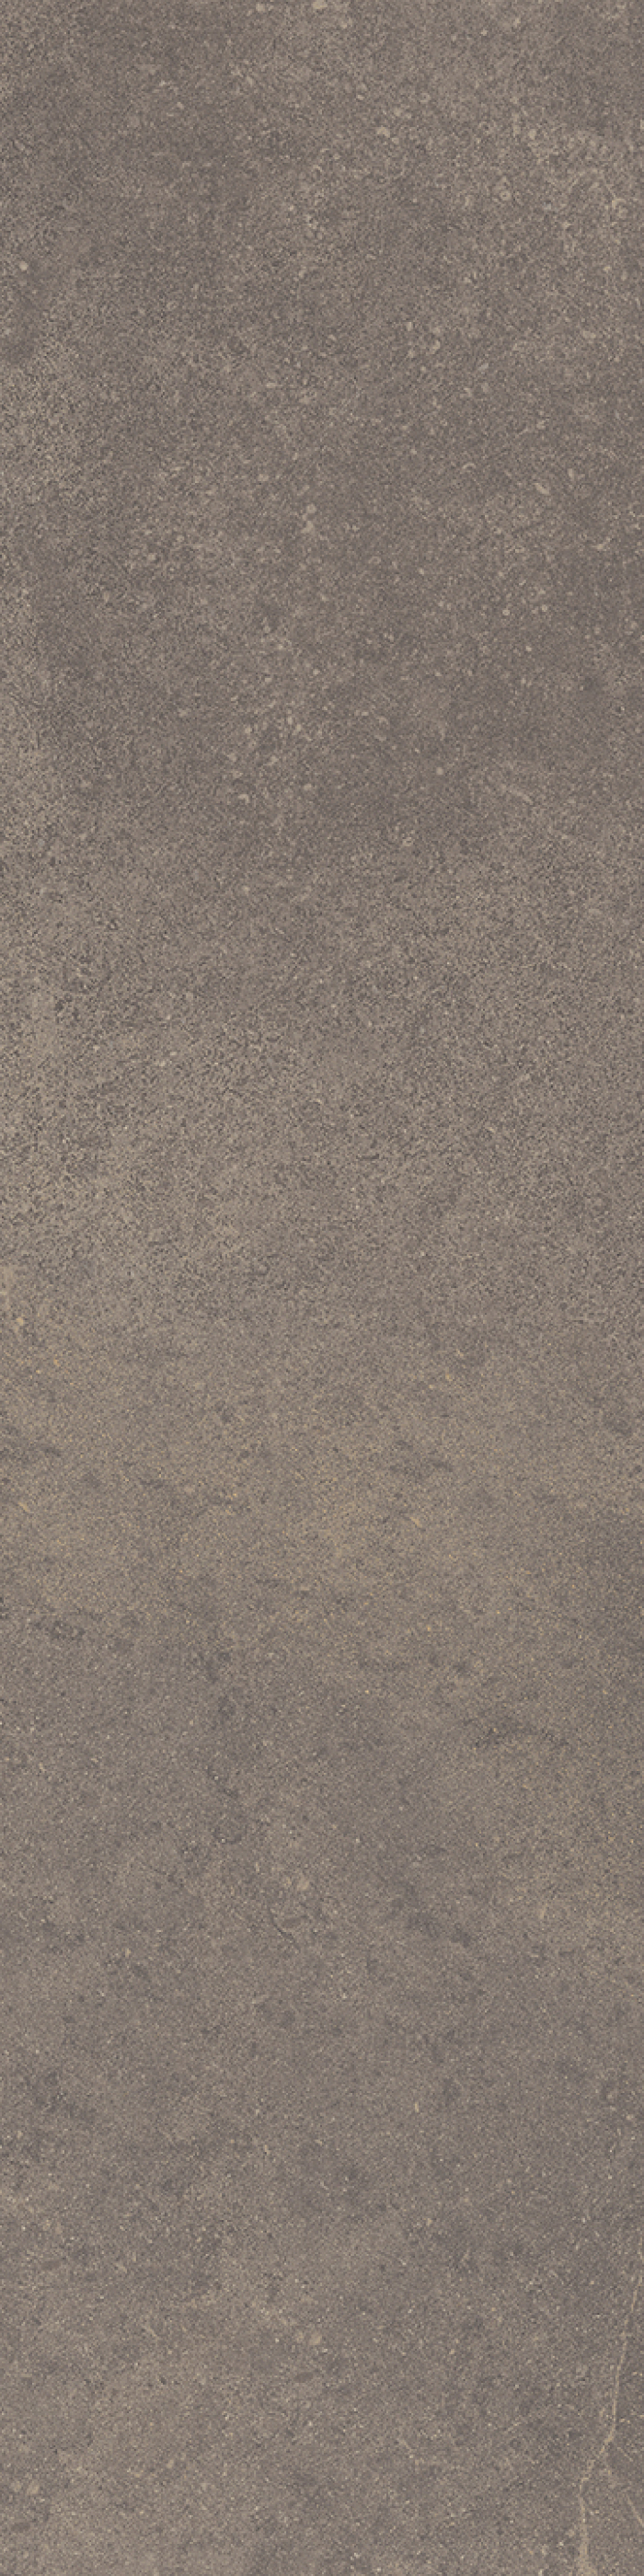 Керамогранит Fondovalle Planeto Mars 30x120 PNT057